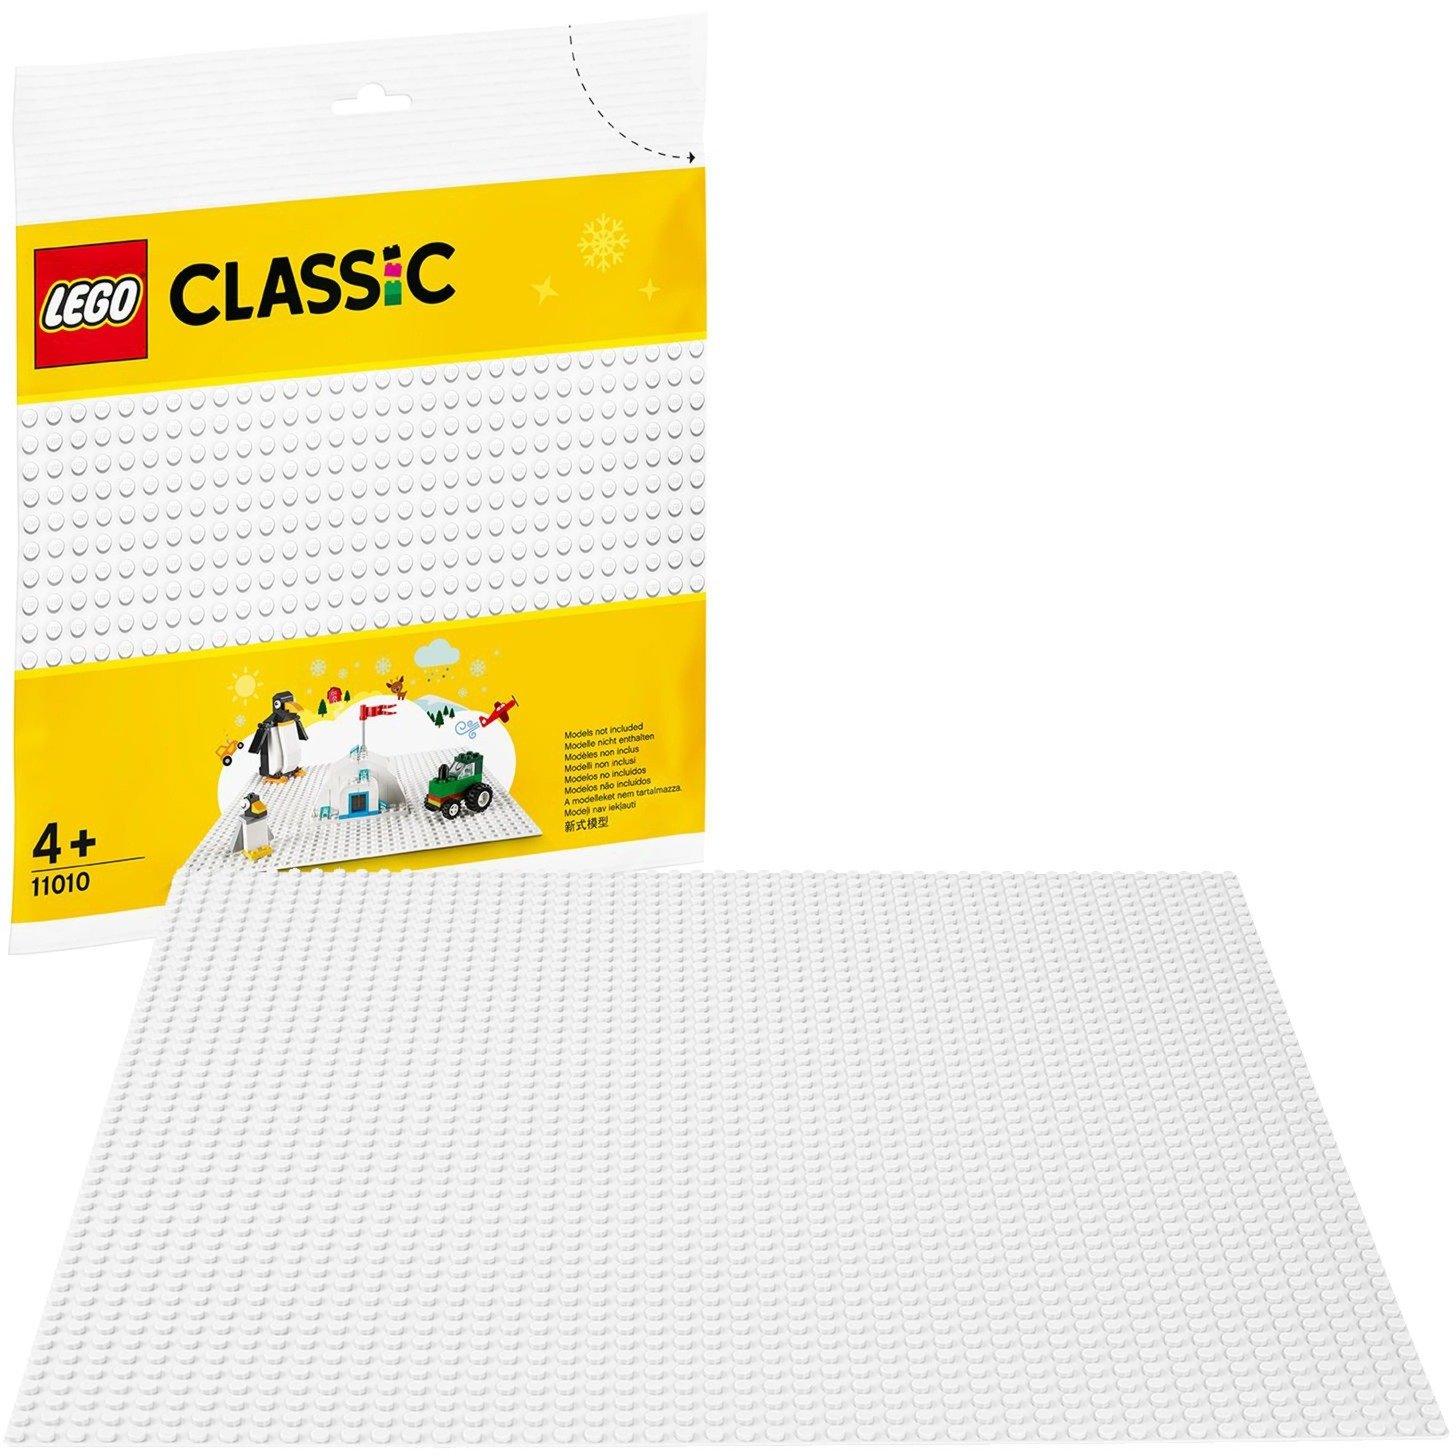 Image of Alternate - 11010 Classic Weiße Bauplatte, Konstruktionsspielzeug online einkaufen bei Alternate